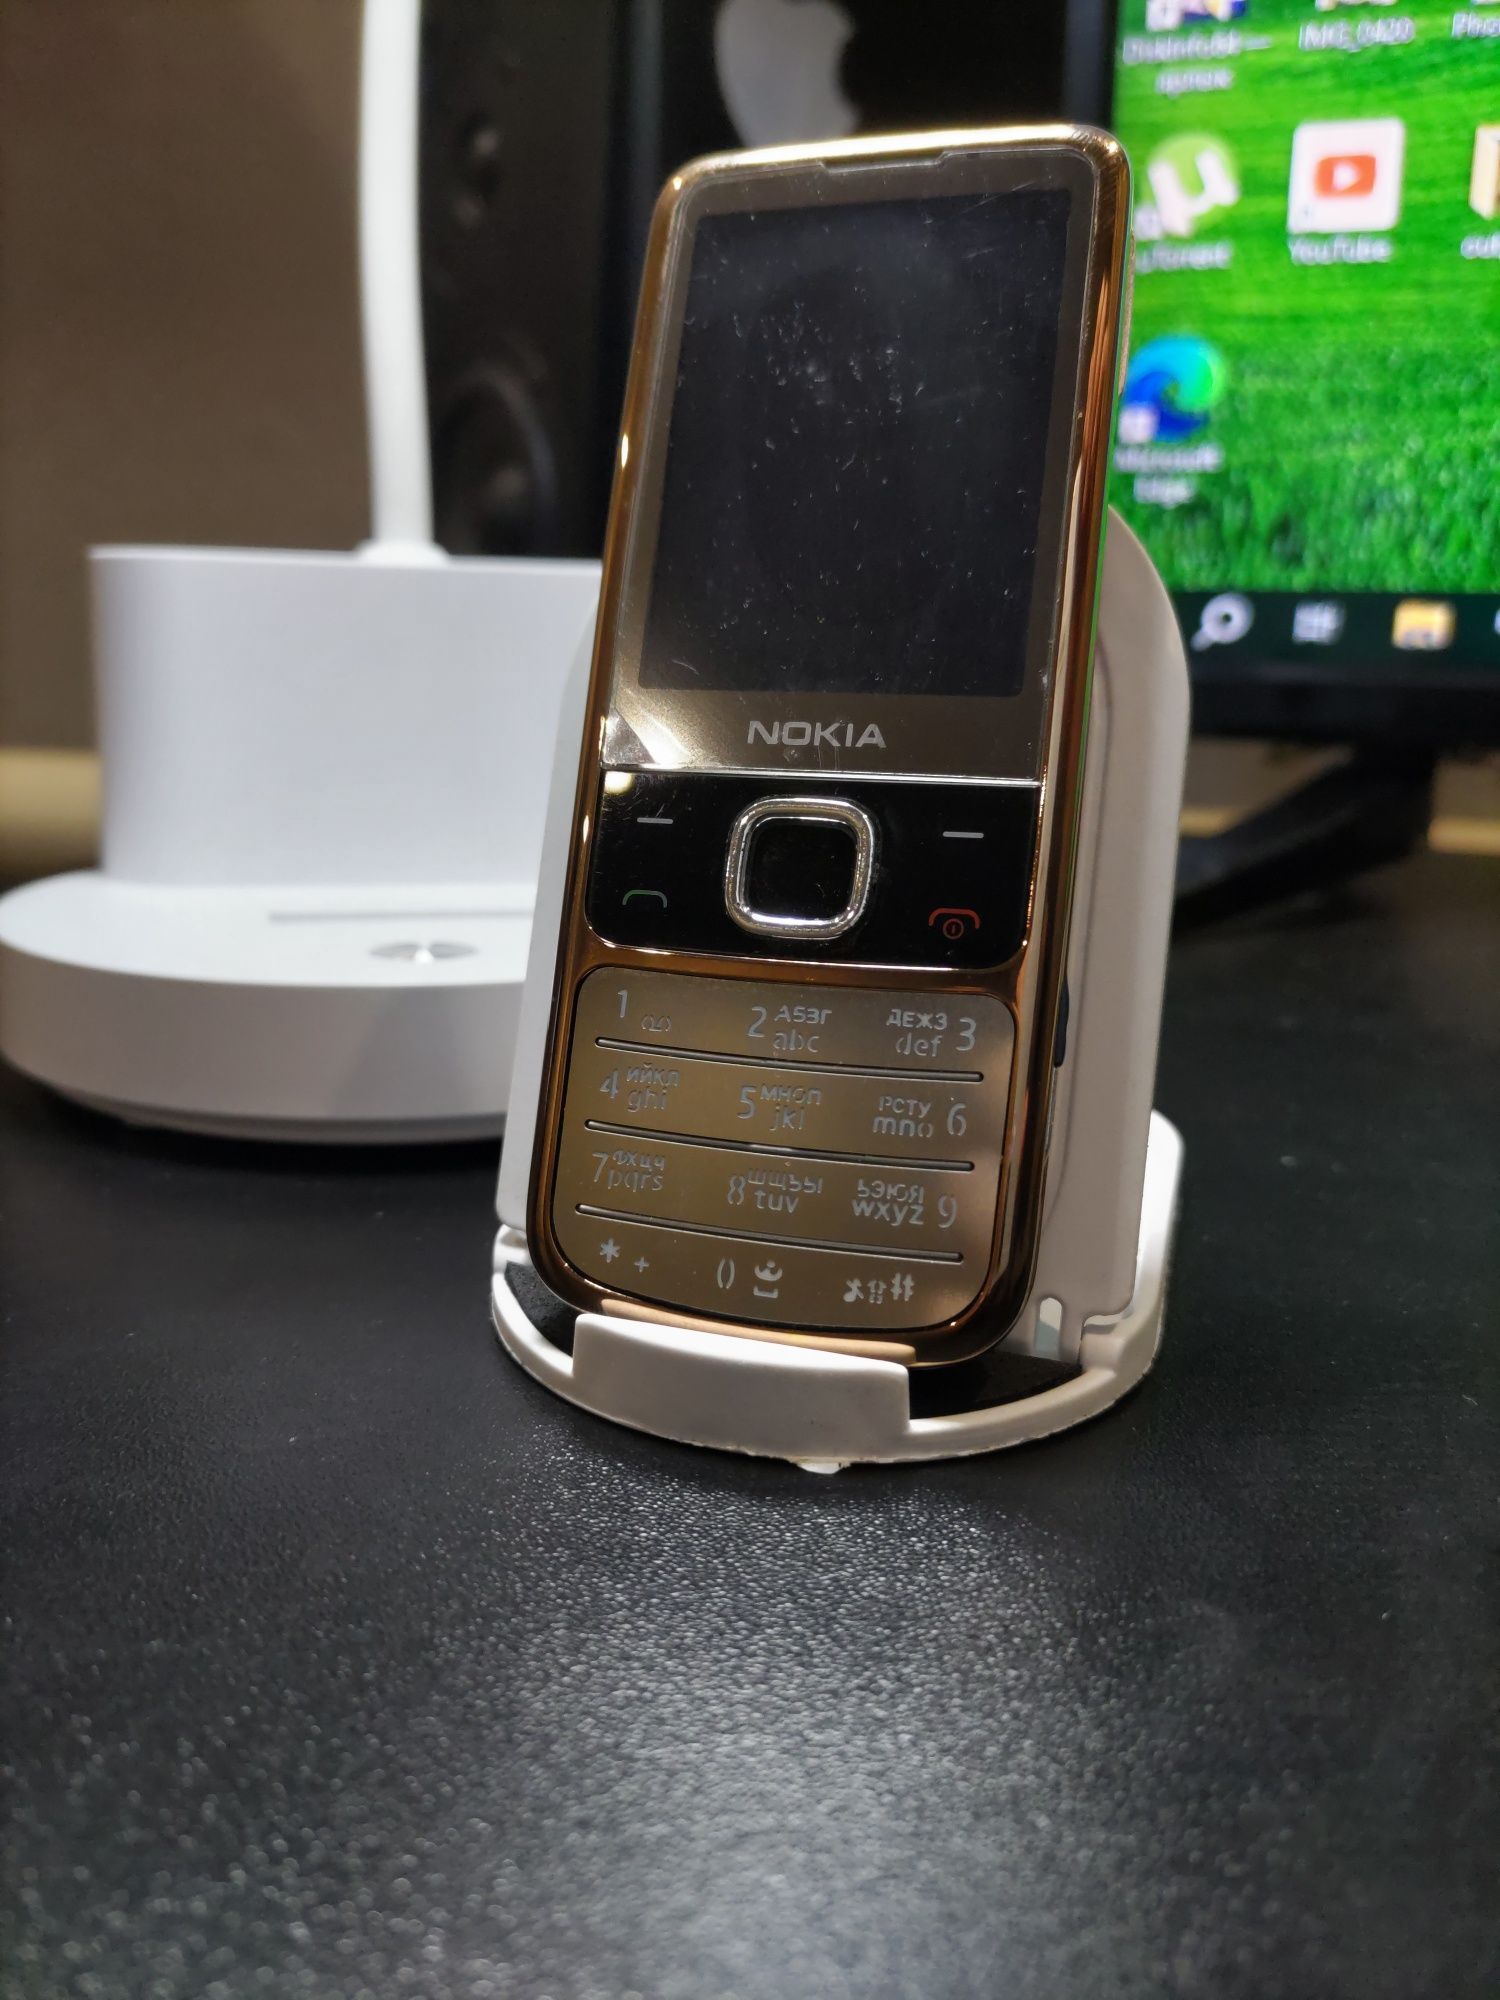 Nokia 6700c phone